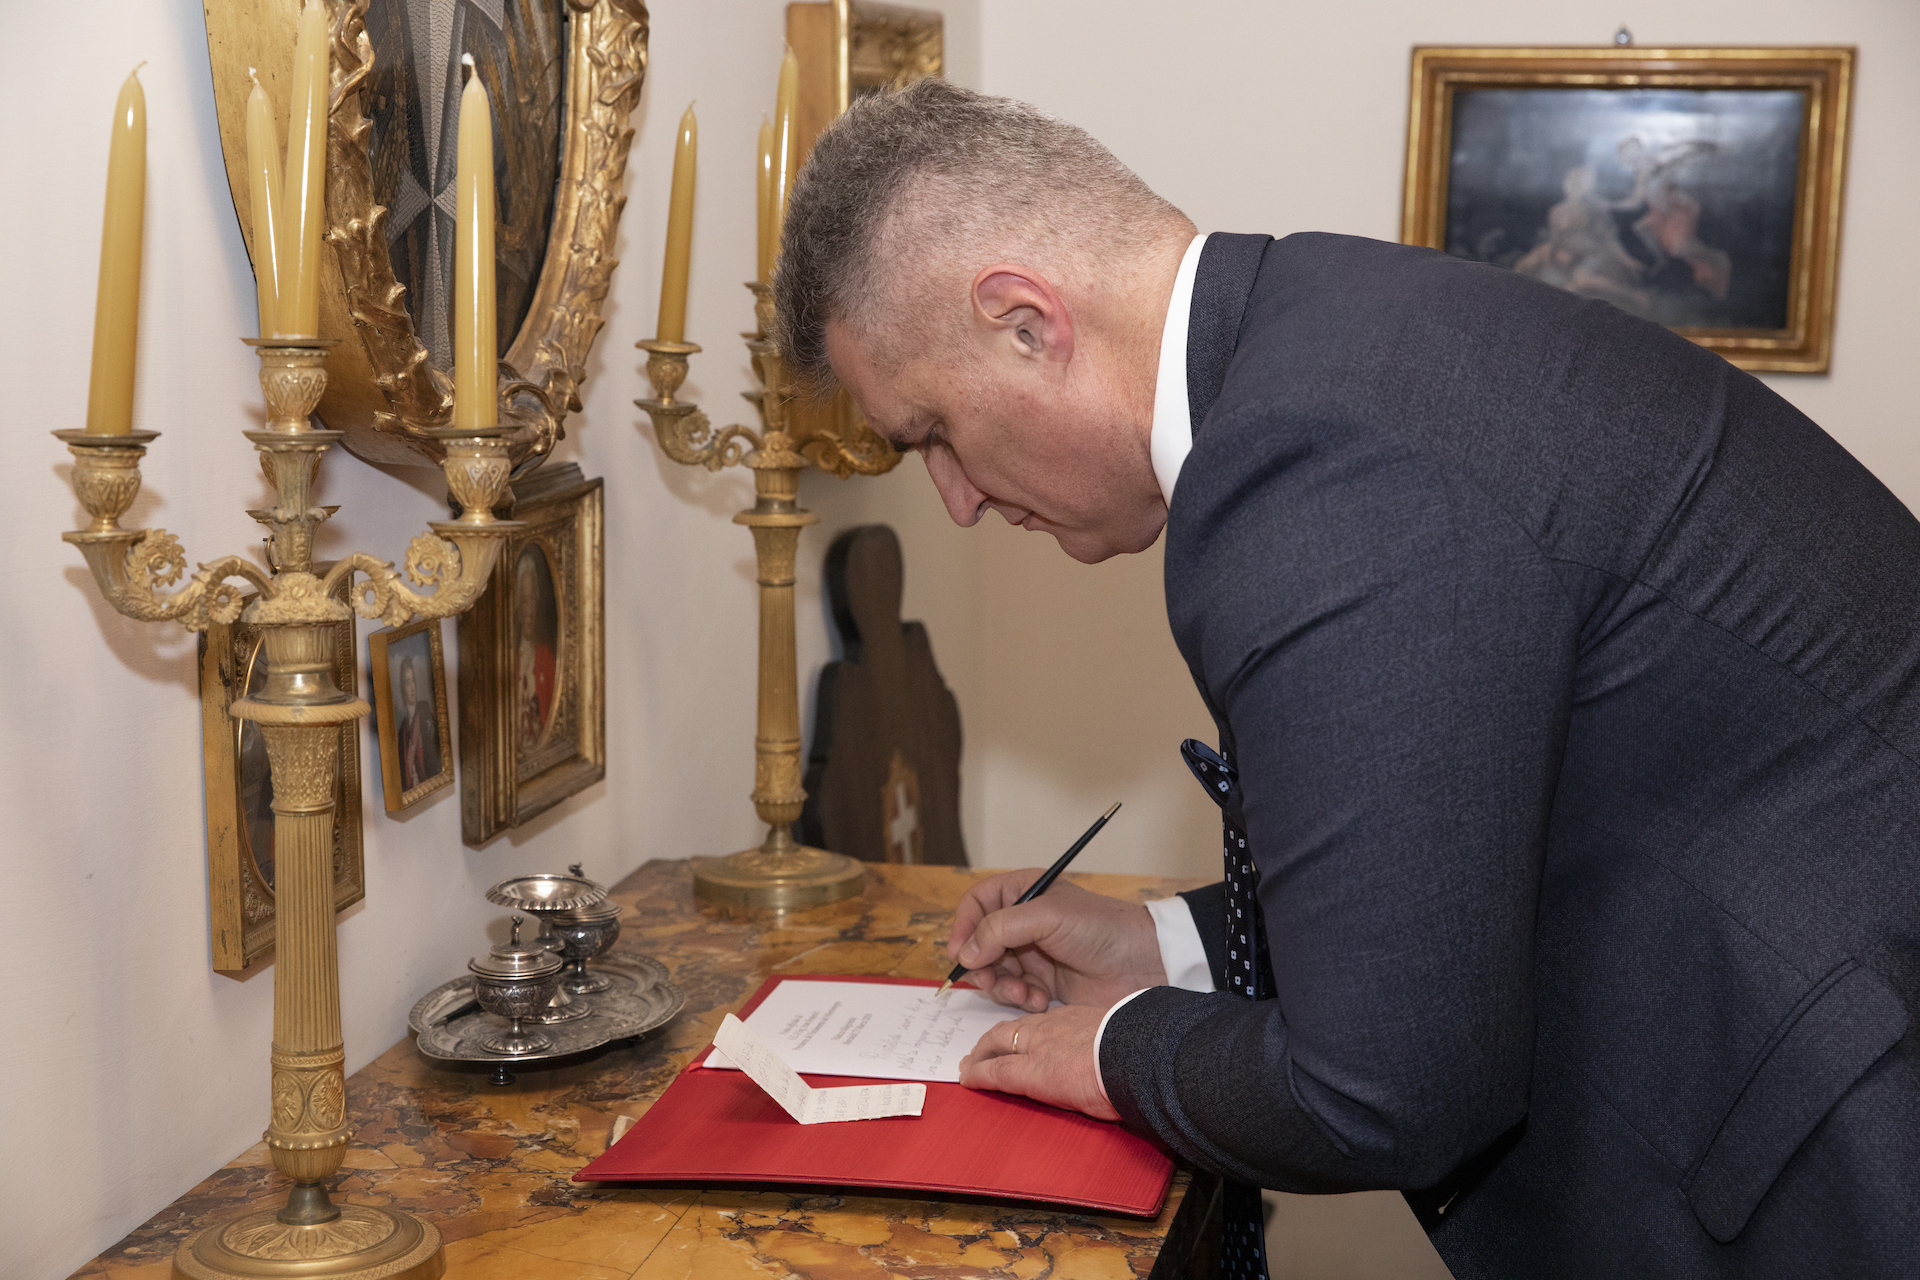 Le Grand Chancelier reçoit le président du Parlement du Monténégro